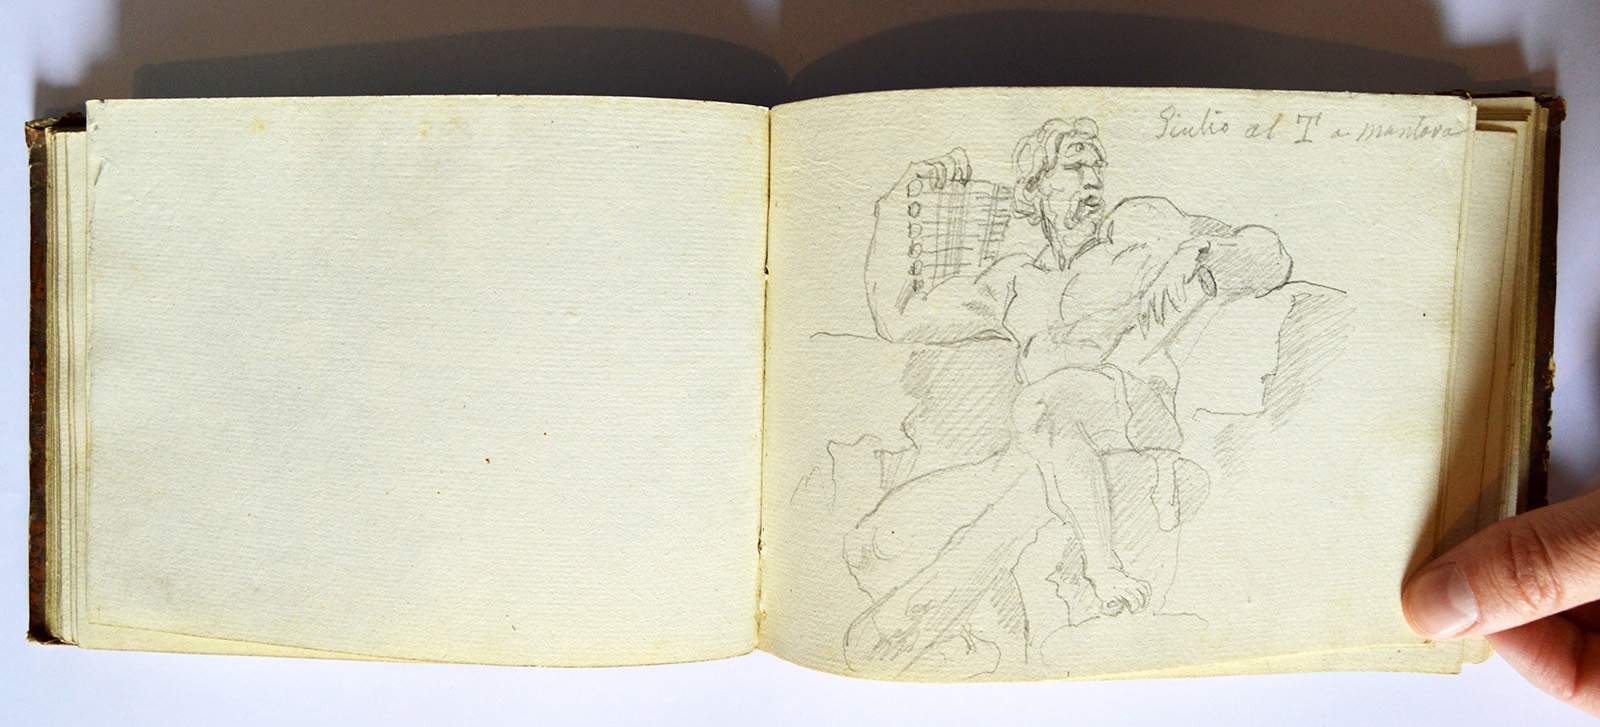 Mantoue, précieux carnet du XIXe siècle offert au Palazzo Ducale : qui en est l'auteur ?